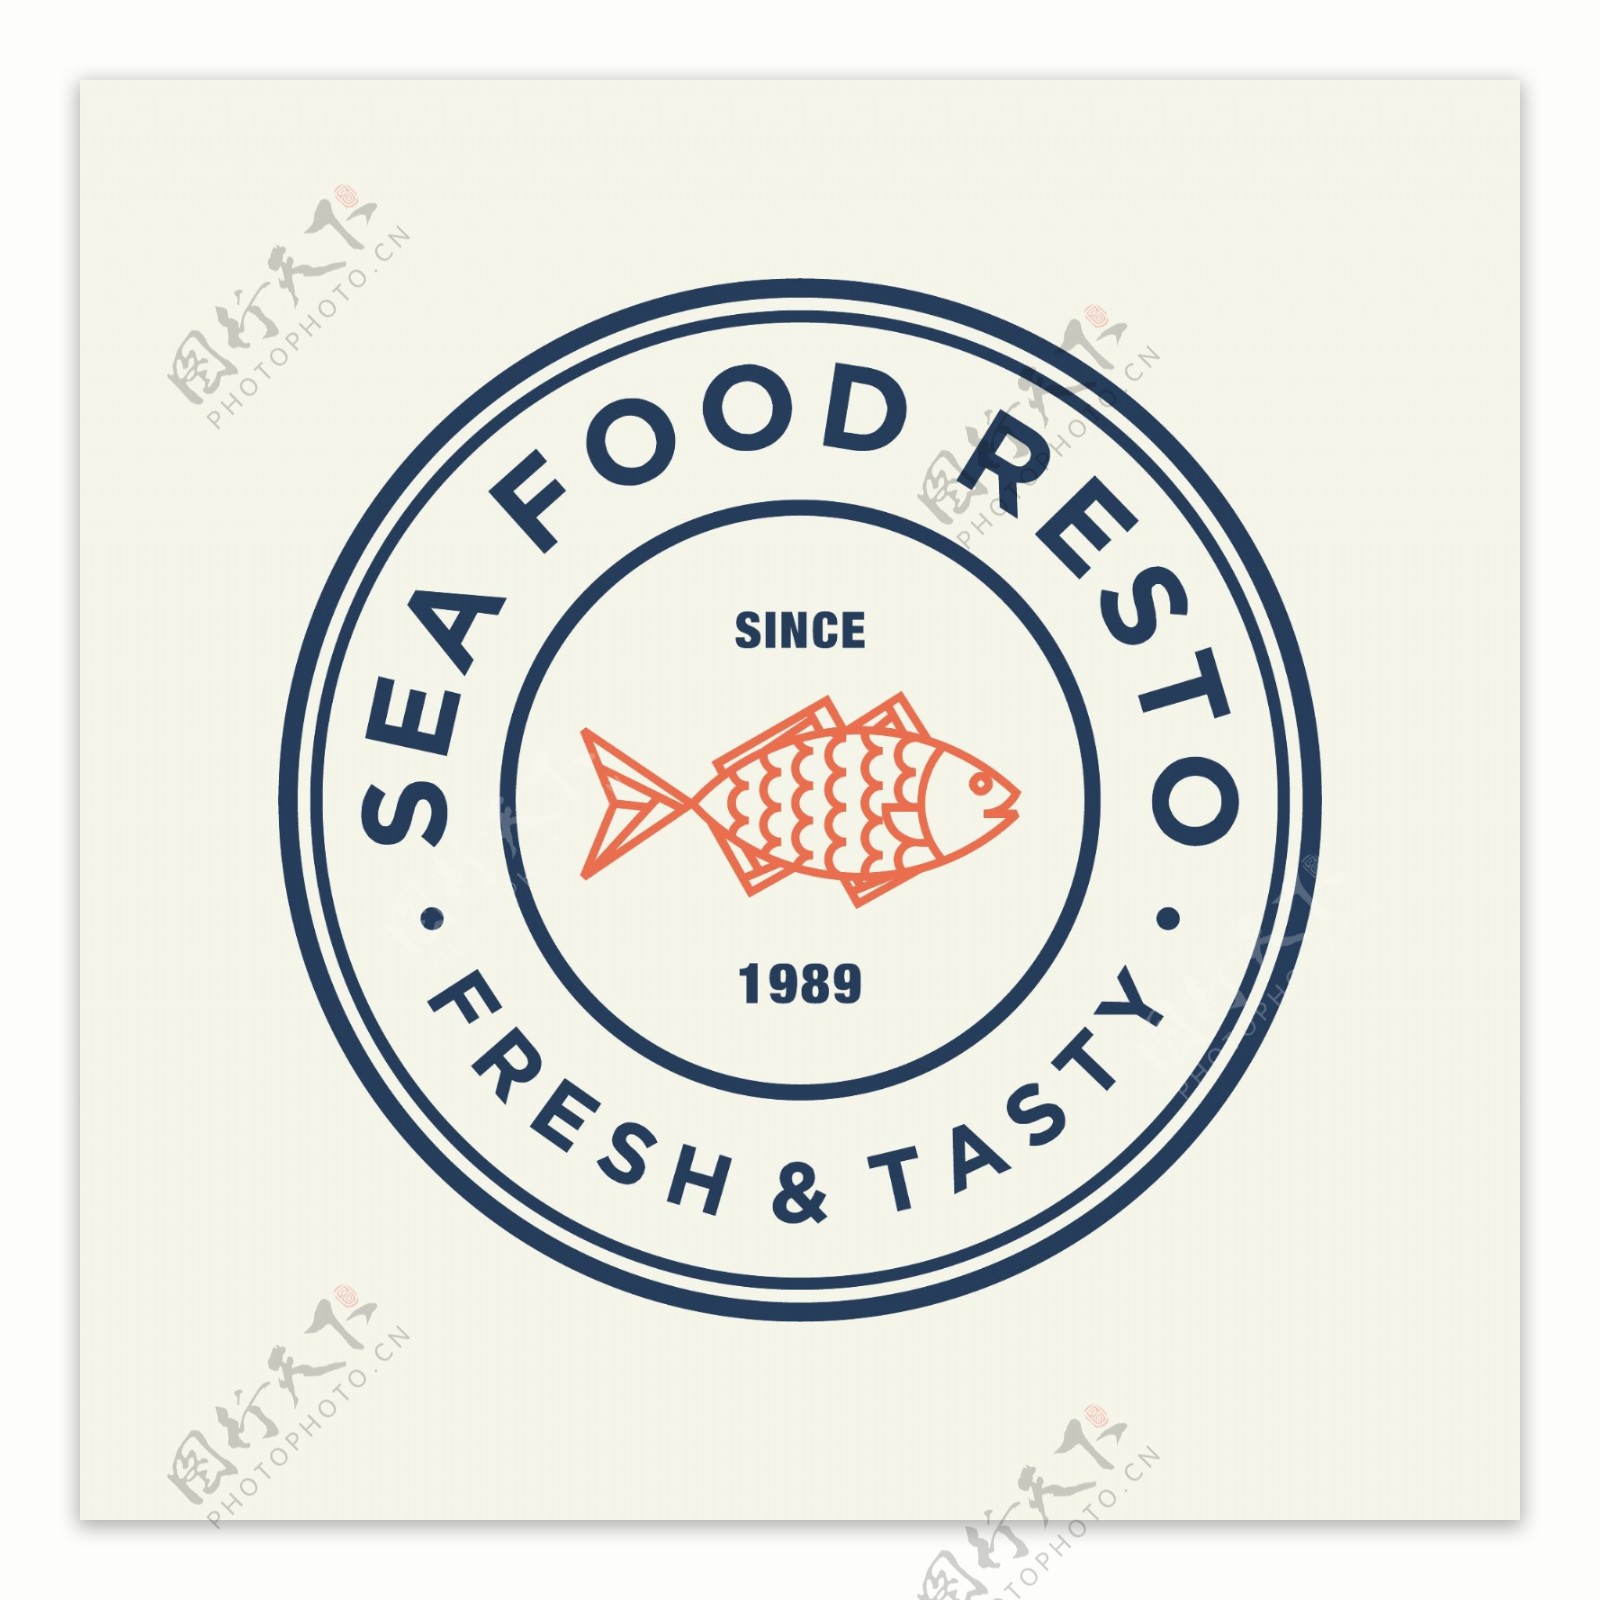 海产品logo